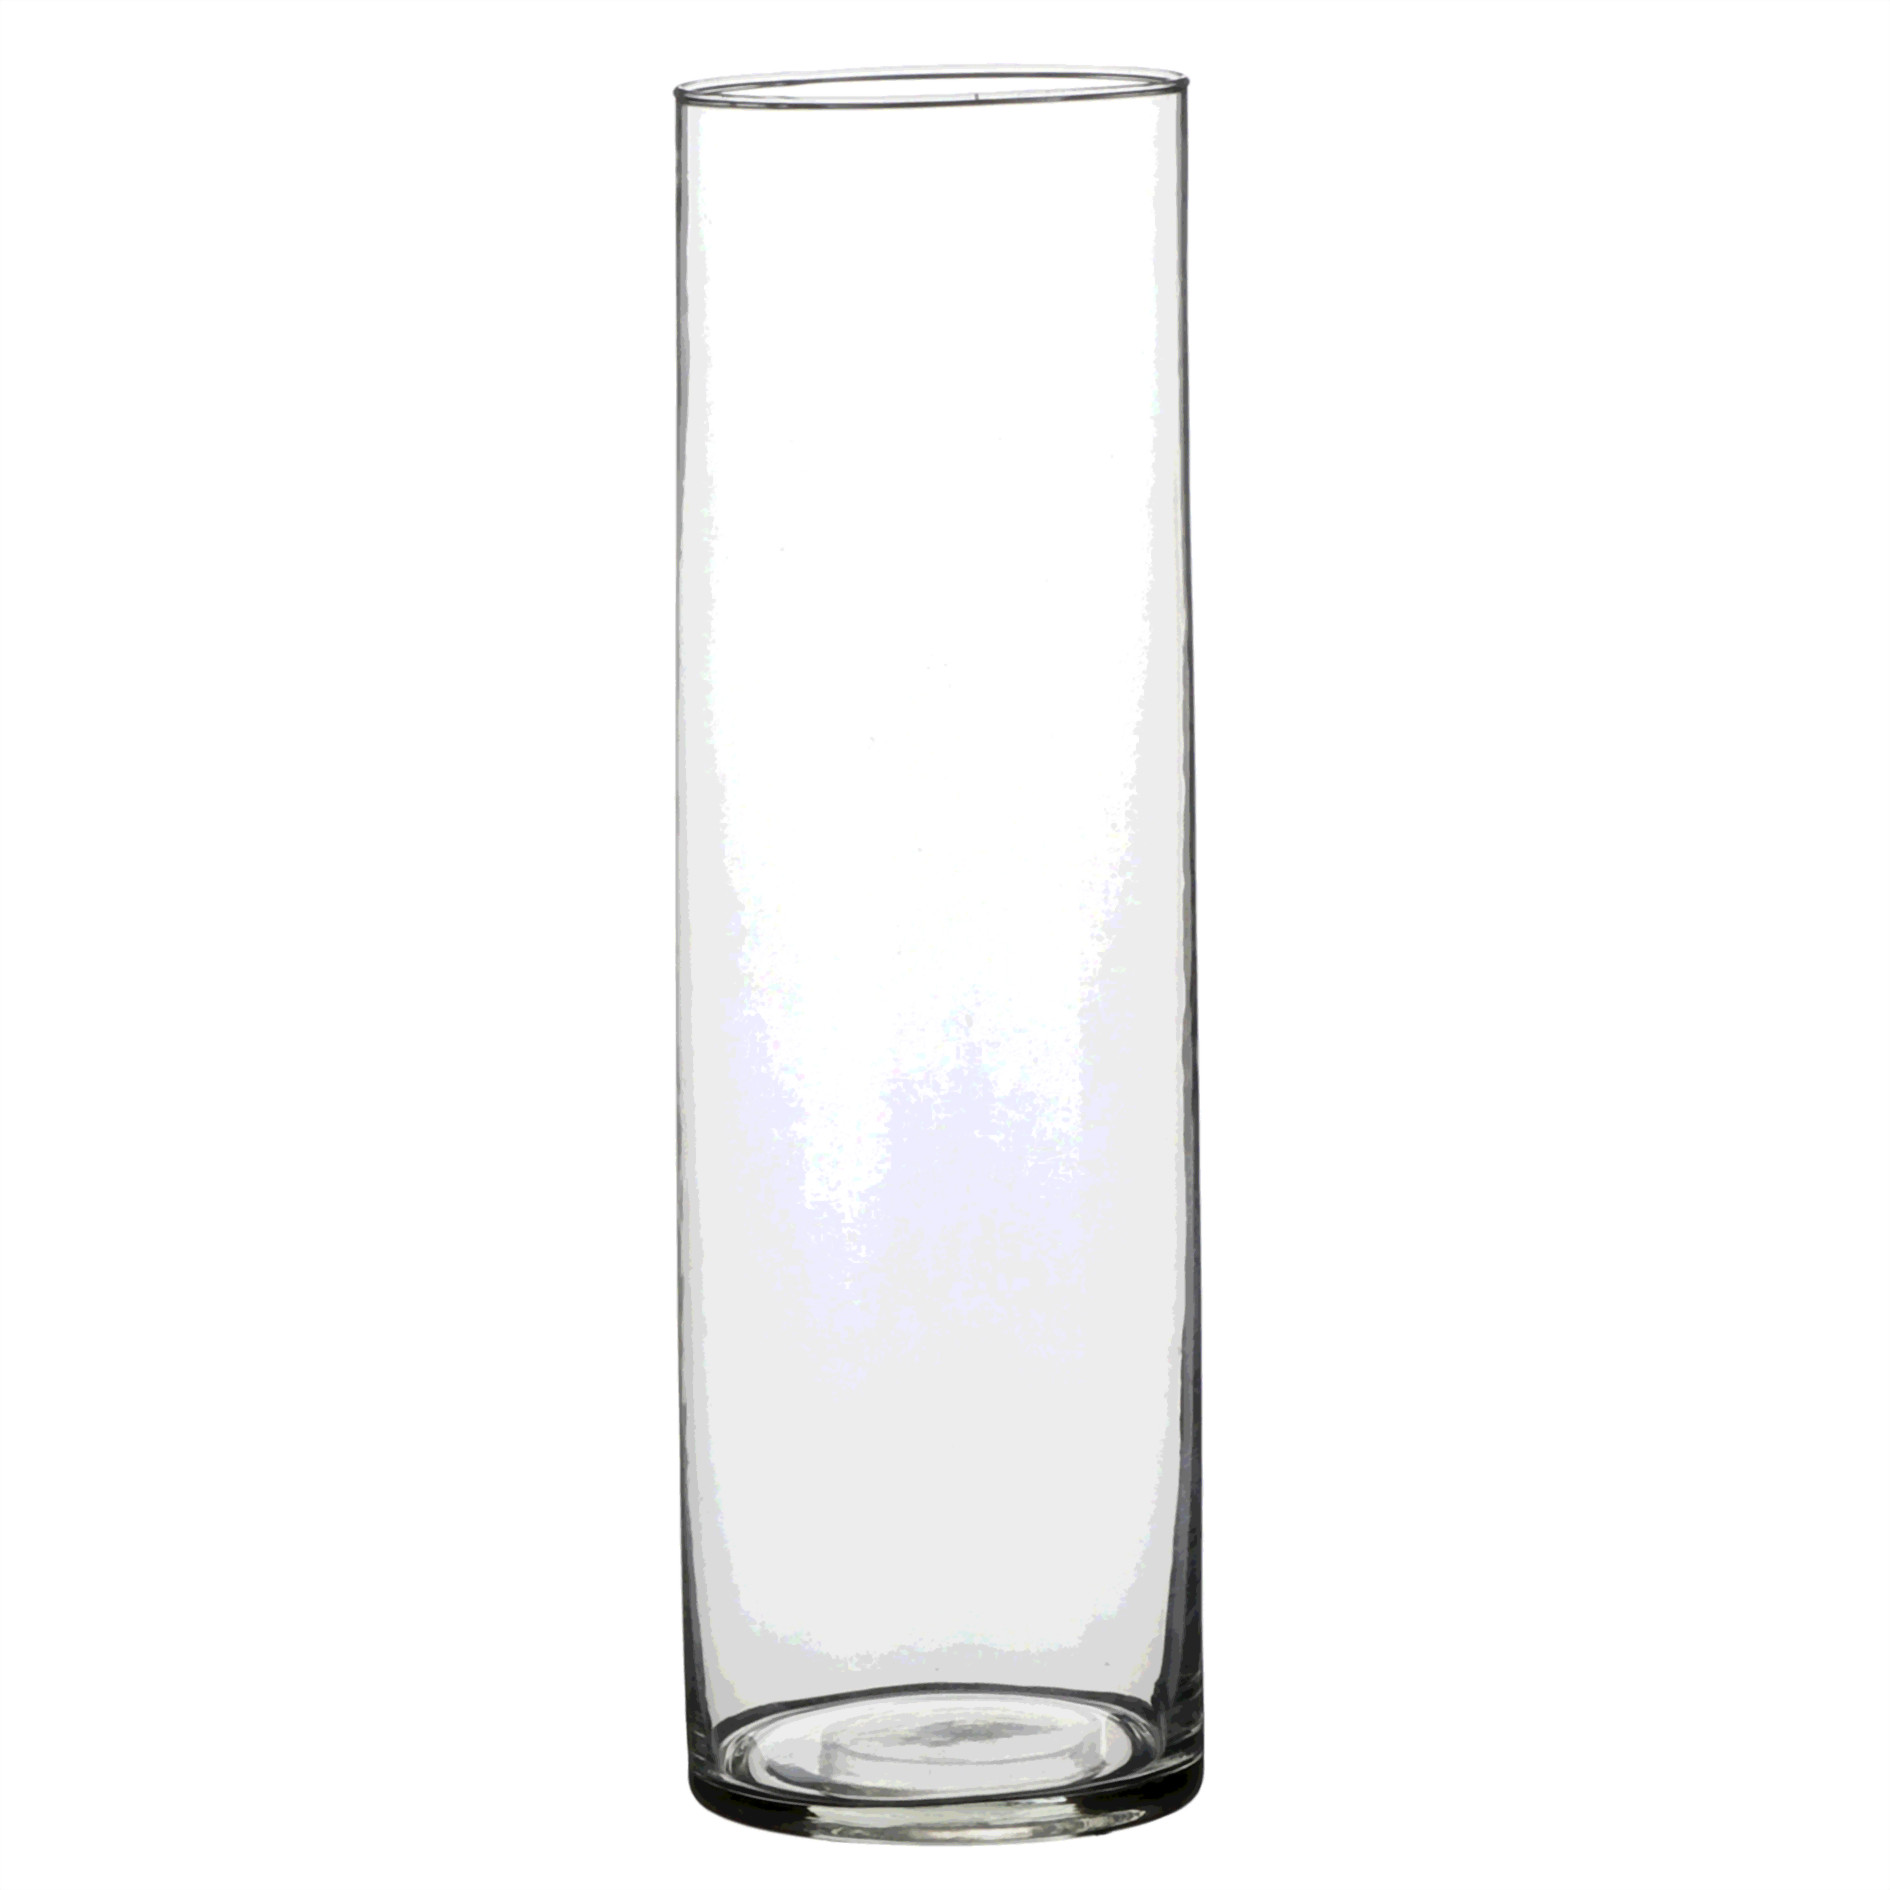 1x Glazen cilinder vaas/vazen 30 cm rond